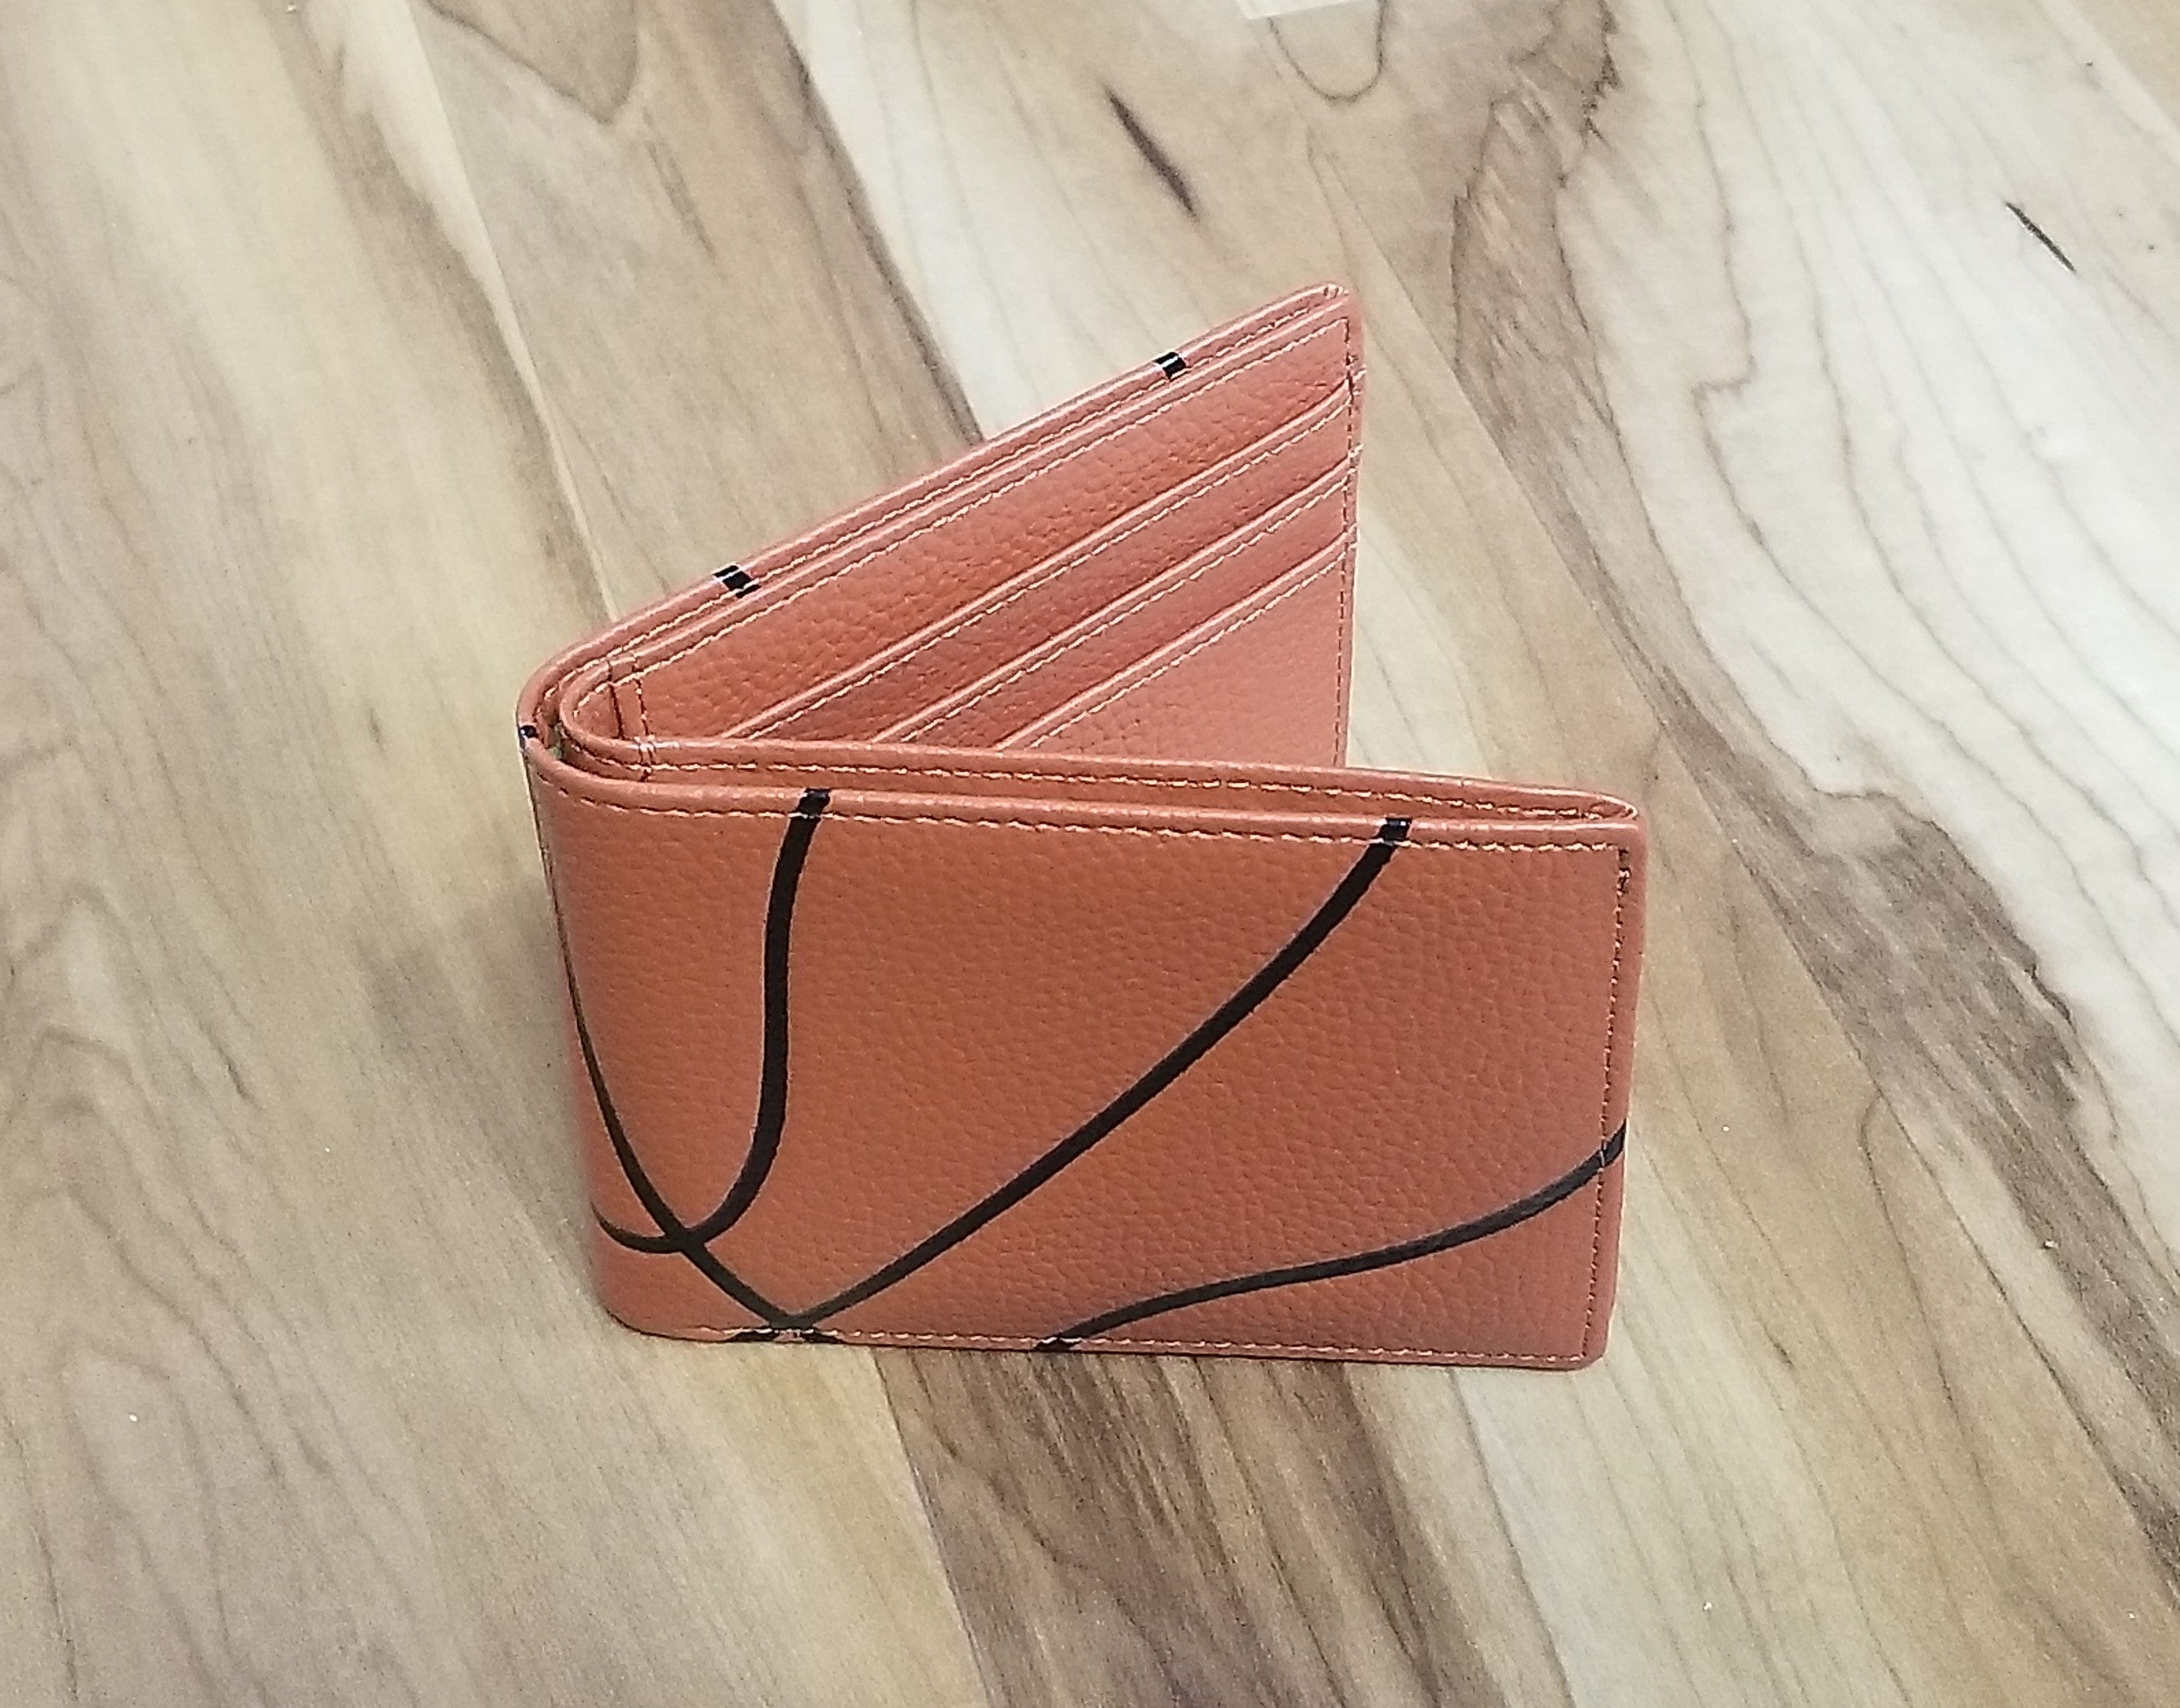 LV x NBA Multiple Wallet Printed Monogram Embossed Leather